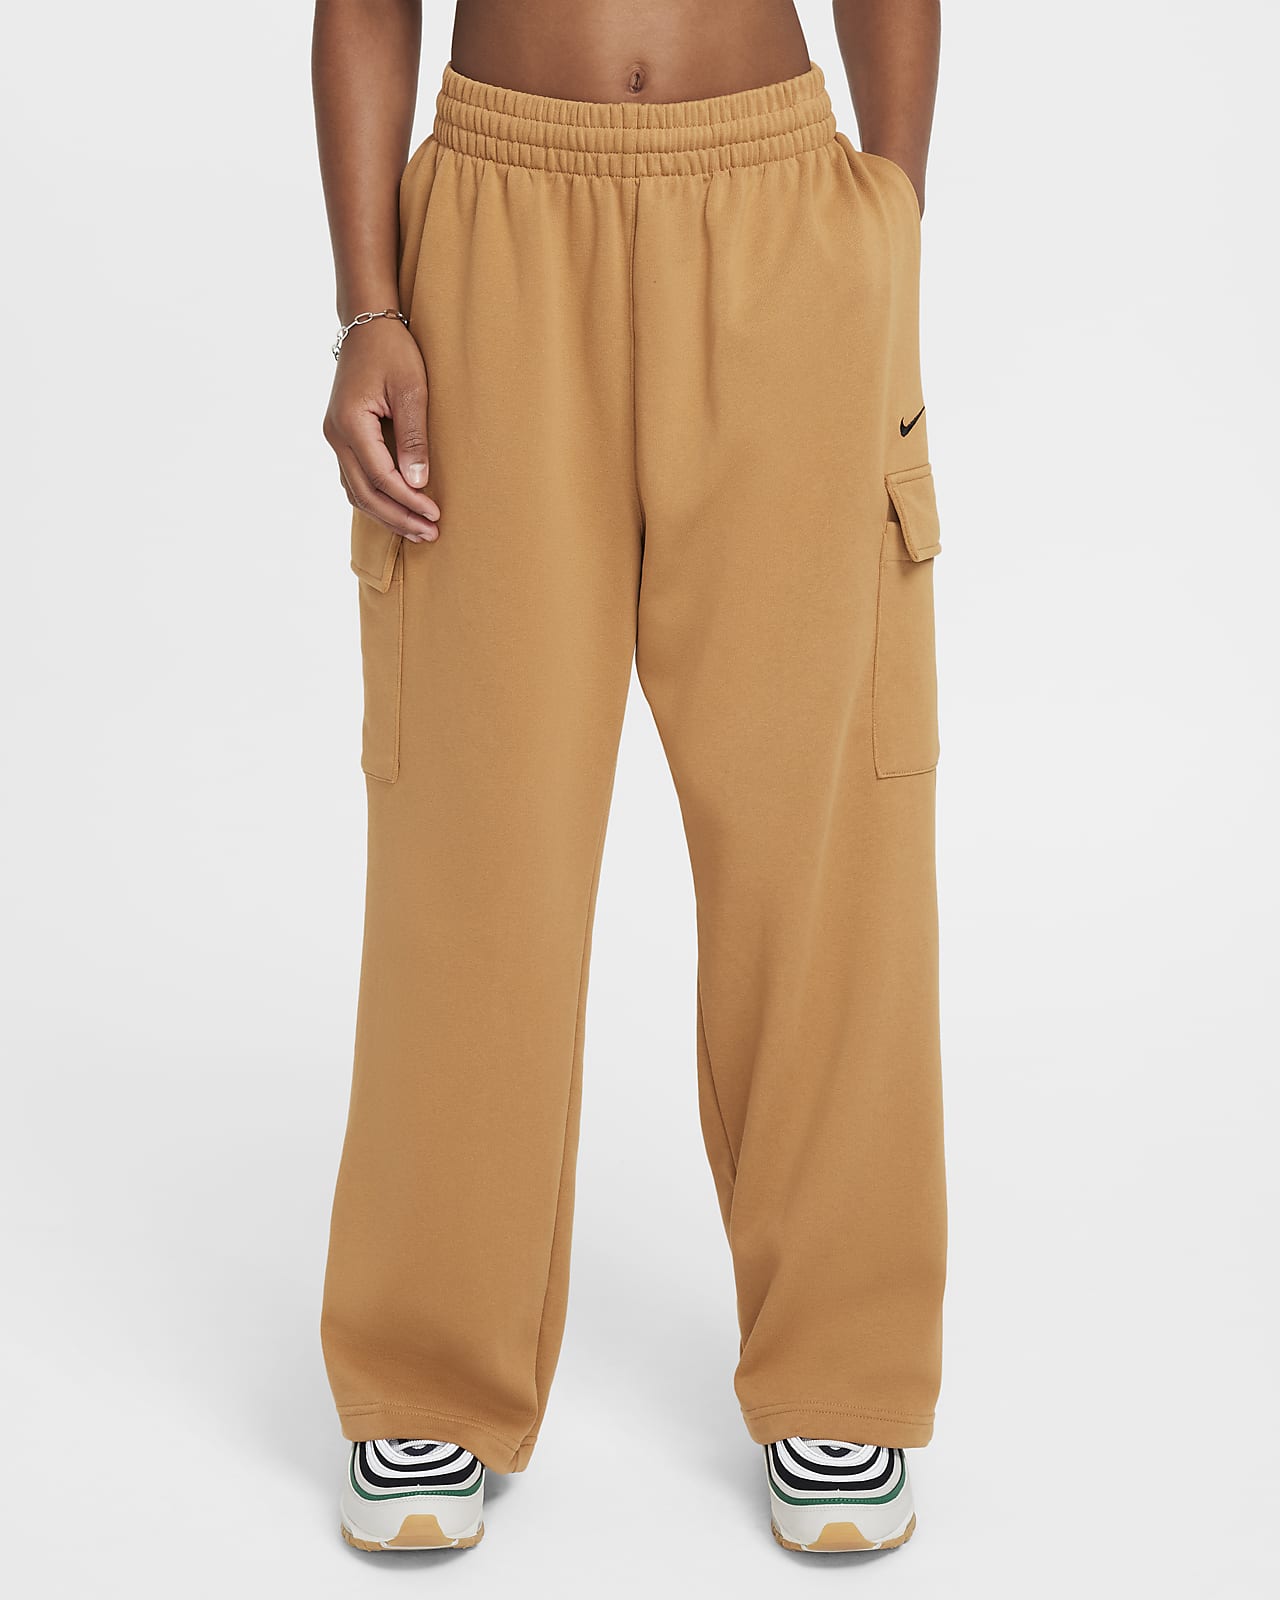 Pantalon oversize en tissu Fleece Dri-FIT Nike Sportswear pour fille